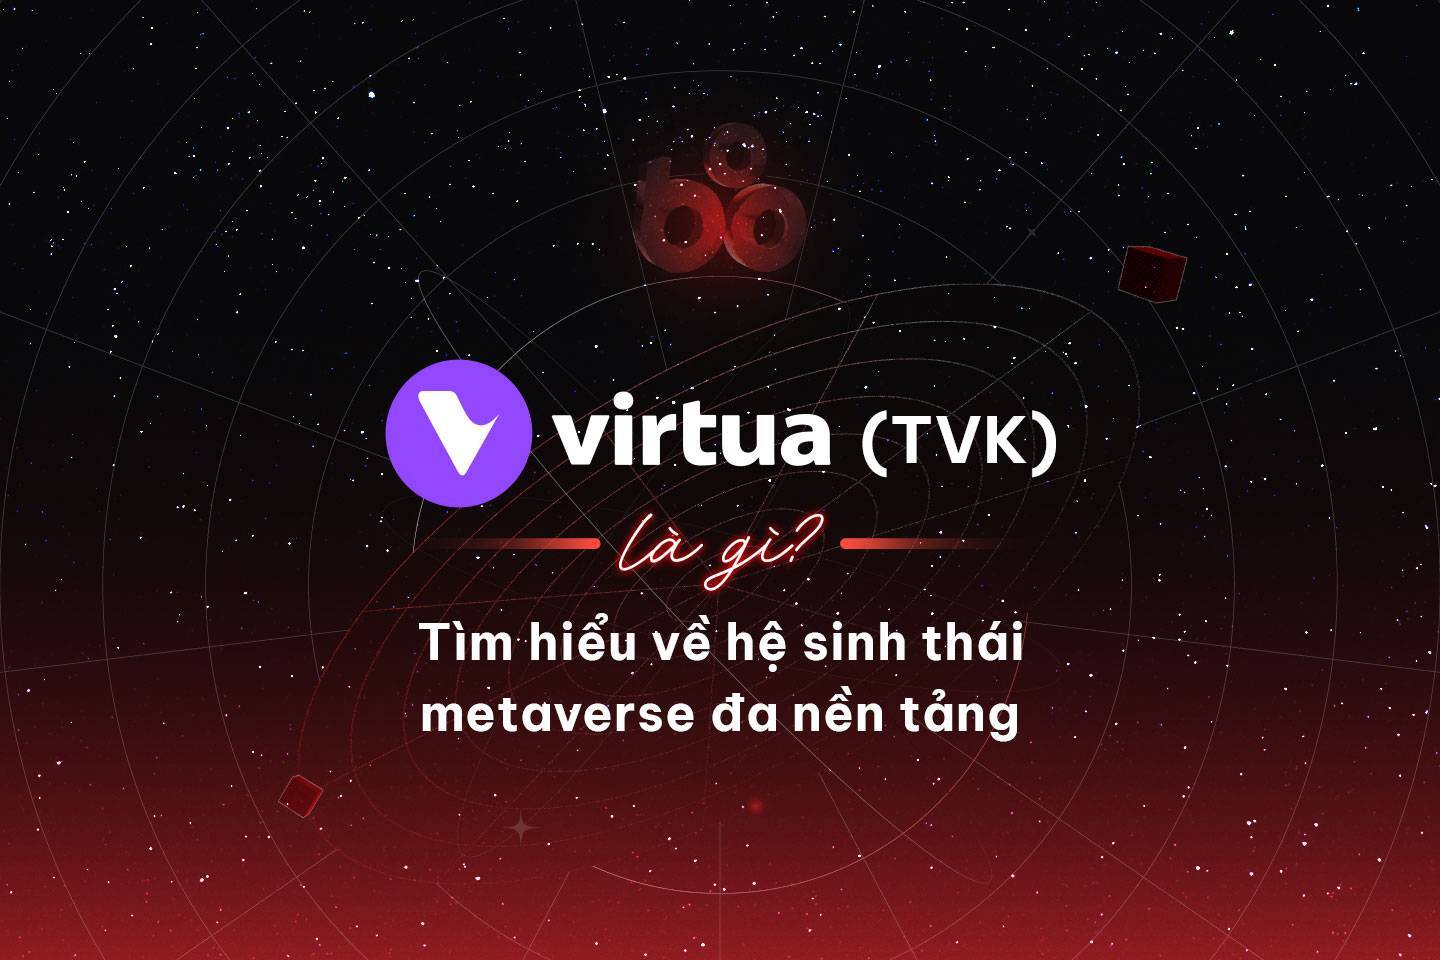 Virtua tvk Là Gì Tìm Hiểu Về Hệ Sinh Thái Metaverse Đa Nền Tảng